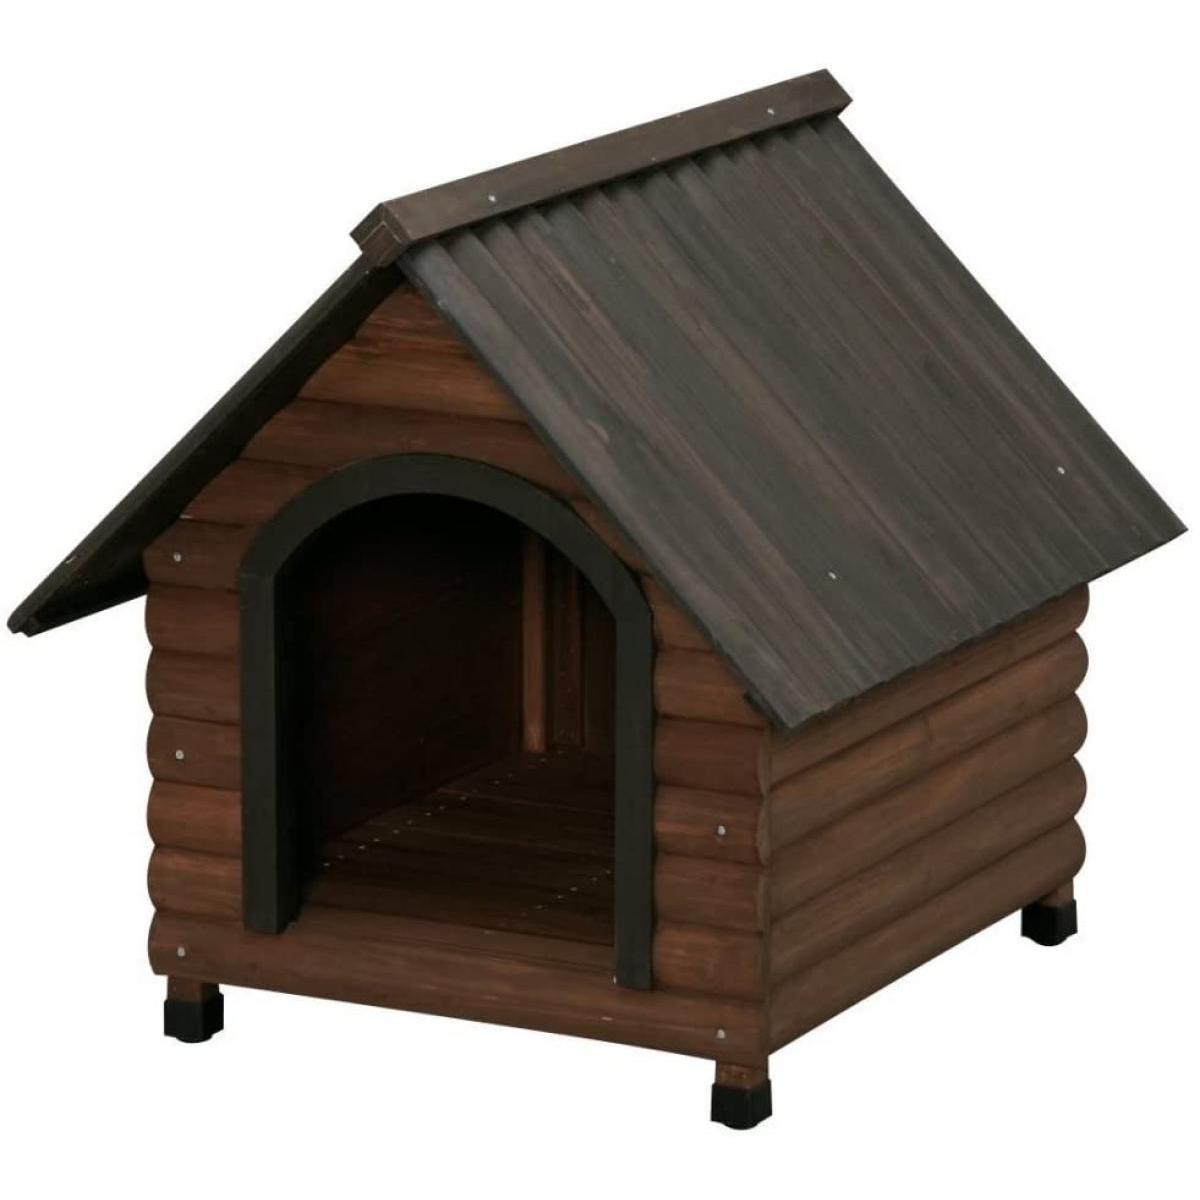 ログ犬舎 LGK-750 ダークブラウン アイリスオーヤマ 犬小屋 ドッグハウス 屋外 木製 ログハウス